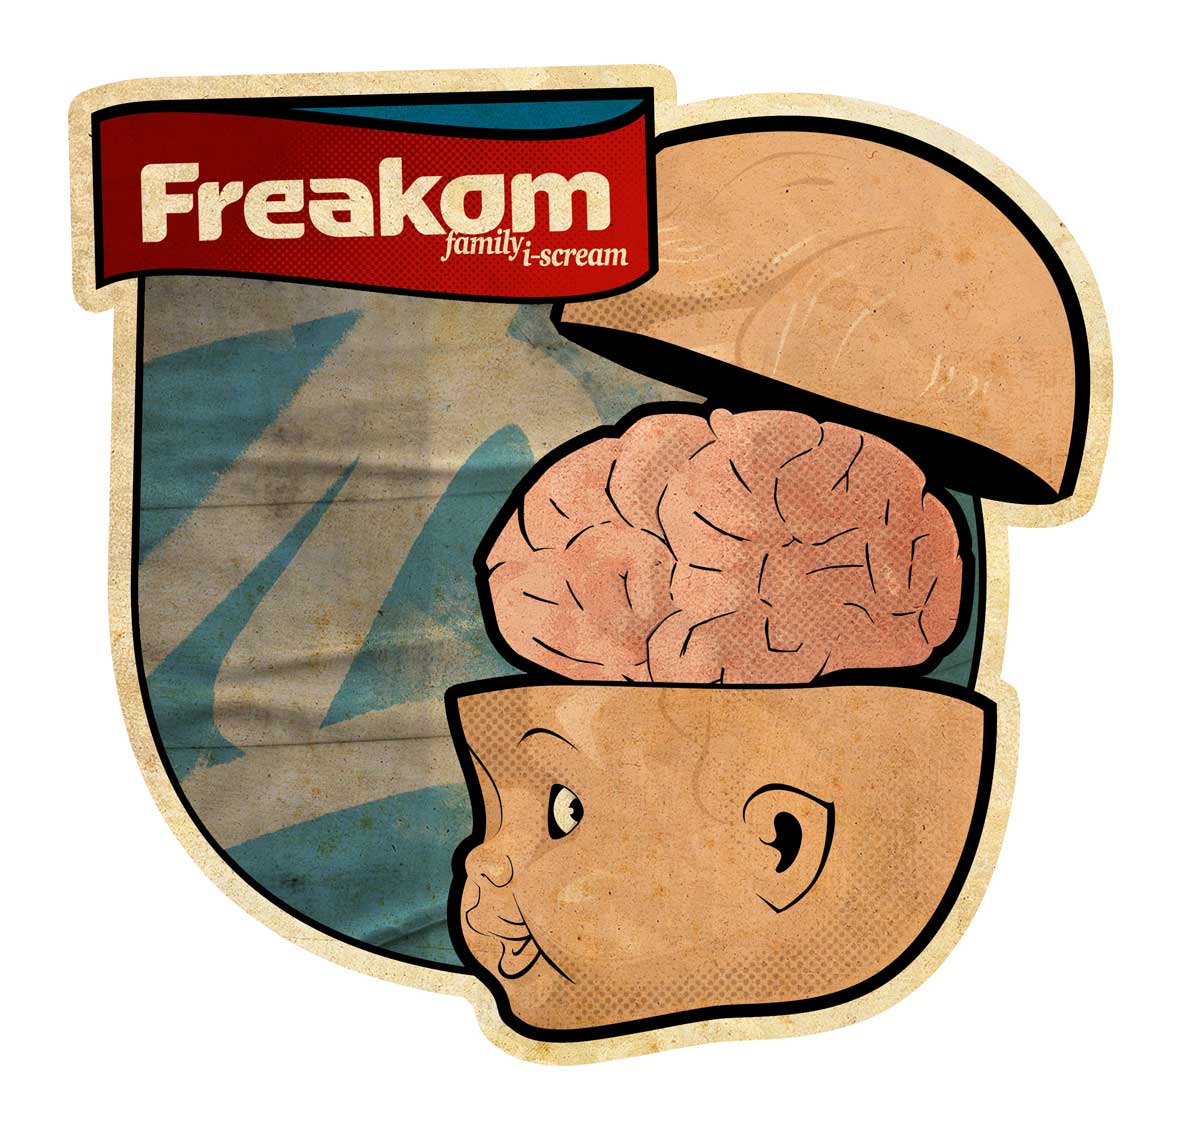 freakom [again] by linnch